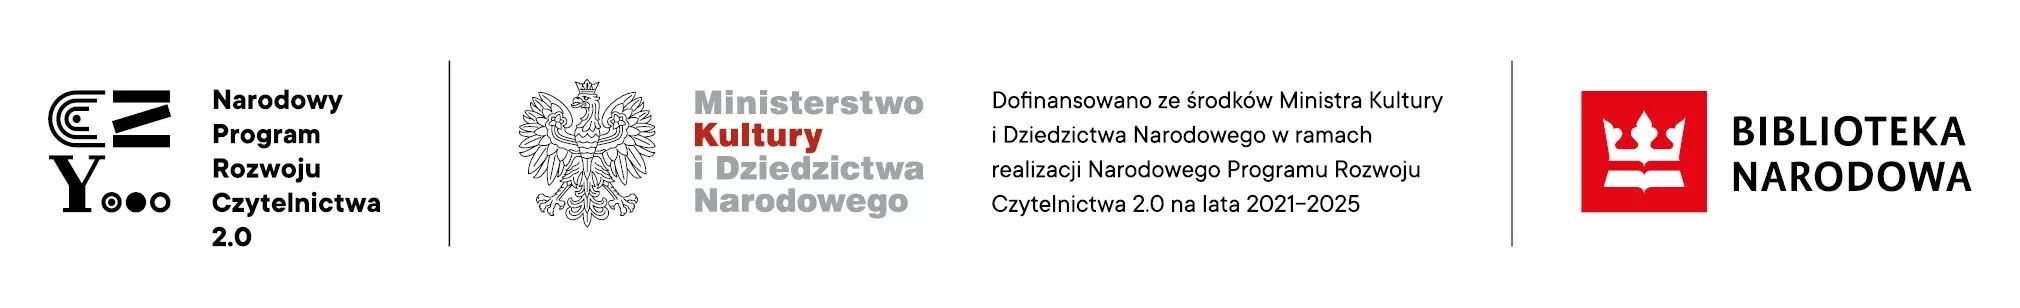 Logotypy projektu Narodowy Program rozwoju Czytelnictwa 2.0